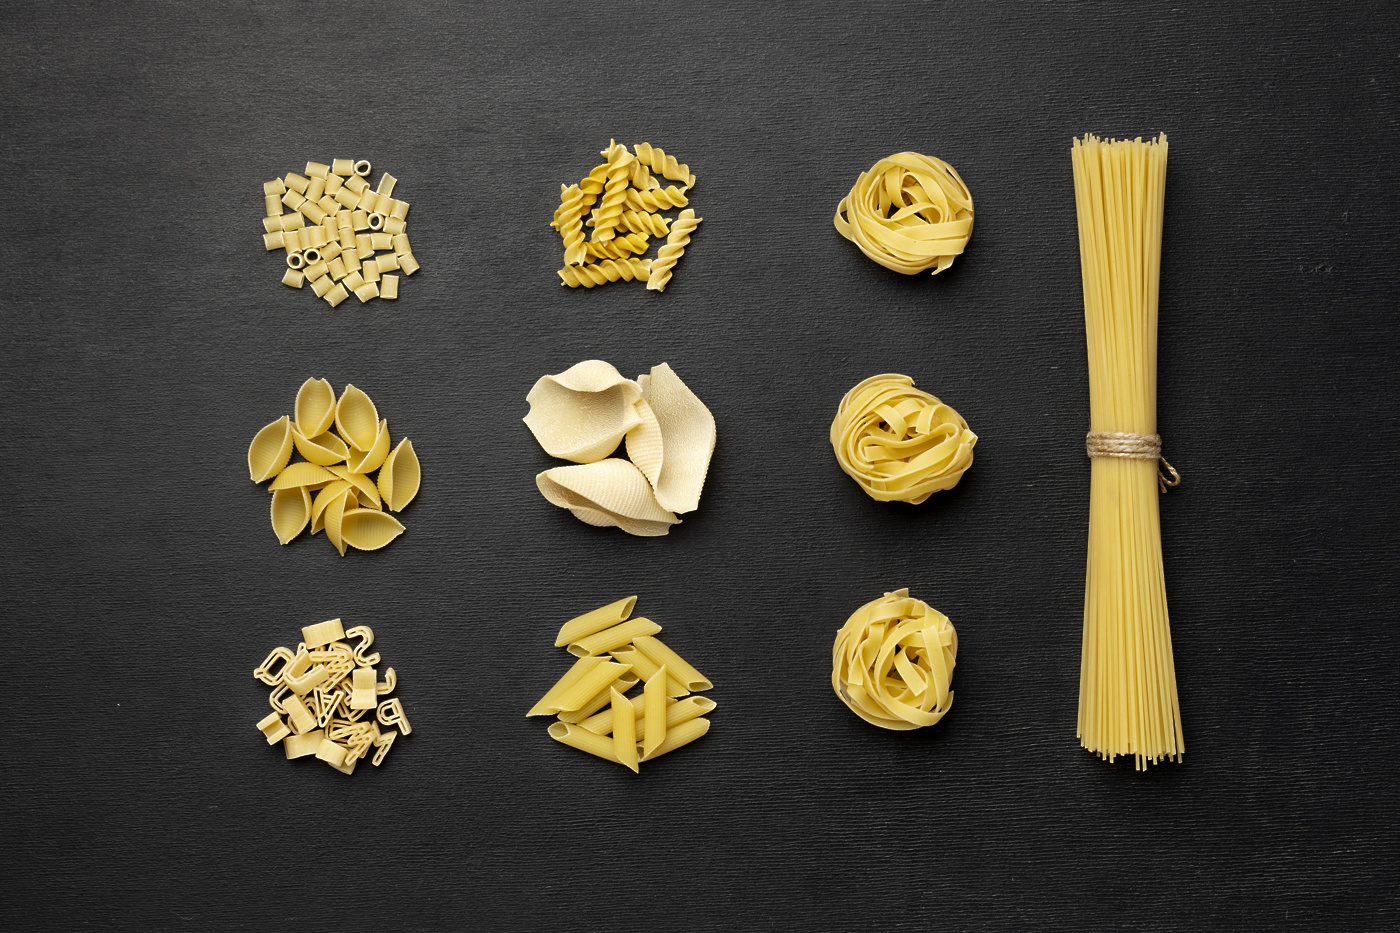 svetovnidantestenintop view different pasta arrangement